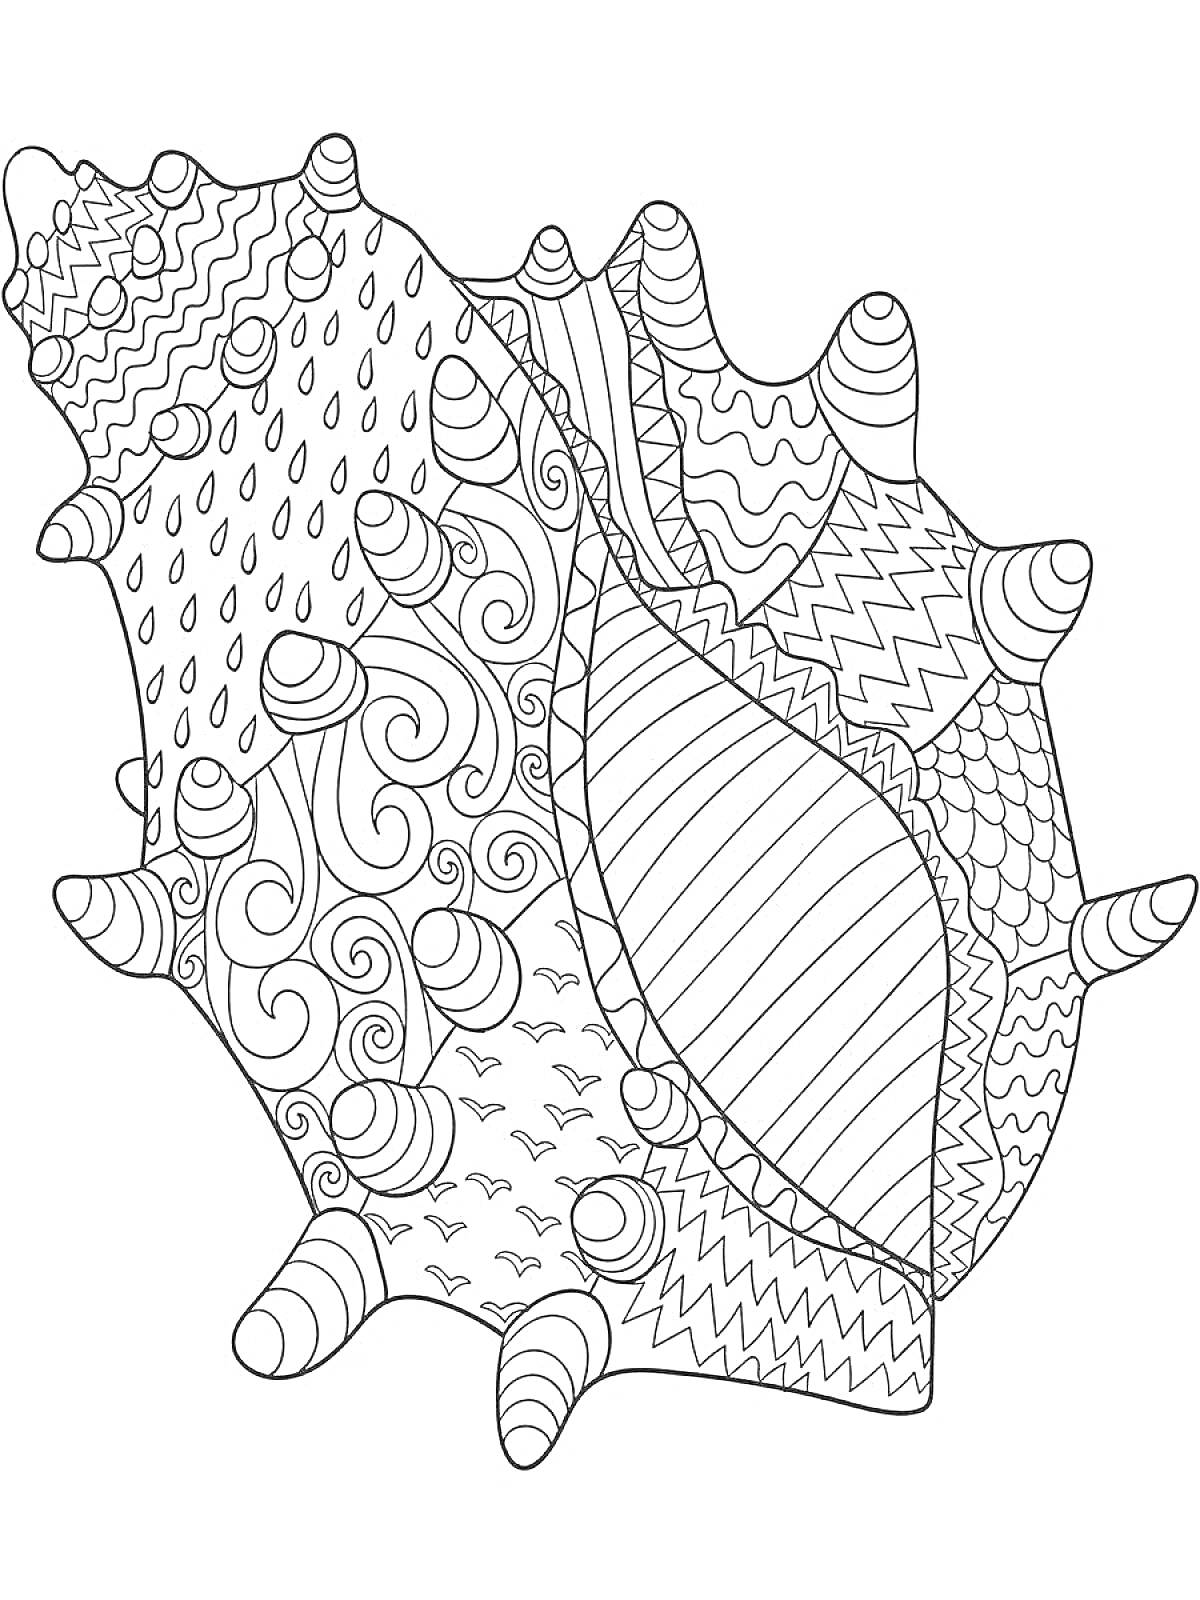 Раскраска антистресс черепаха с ракушкой, узоры в виде волн, капель, зигзагов и спиралей